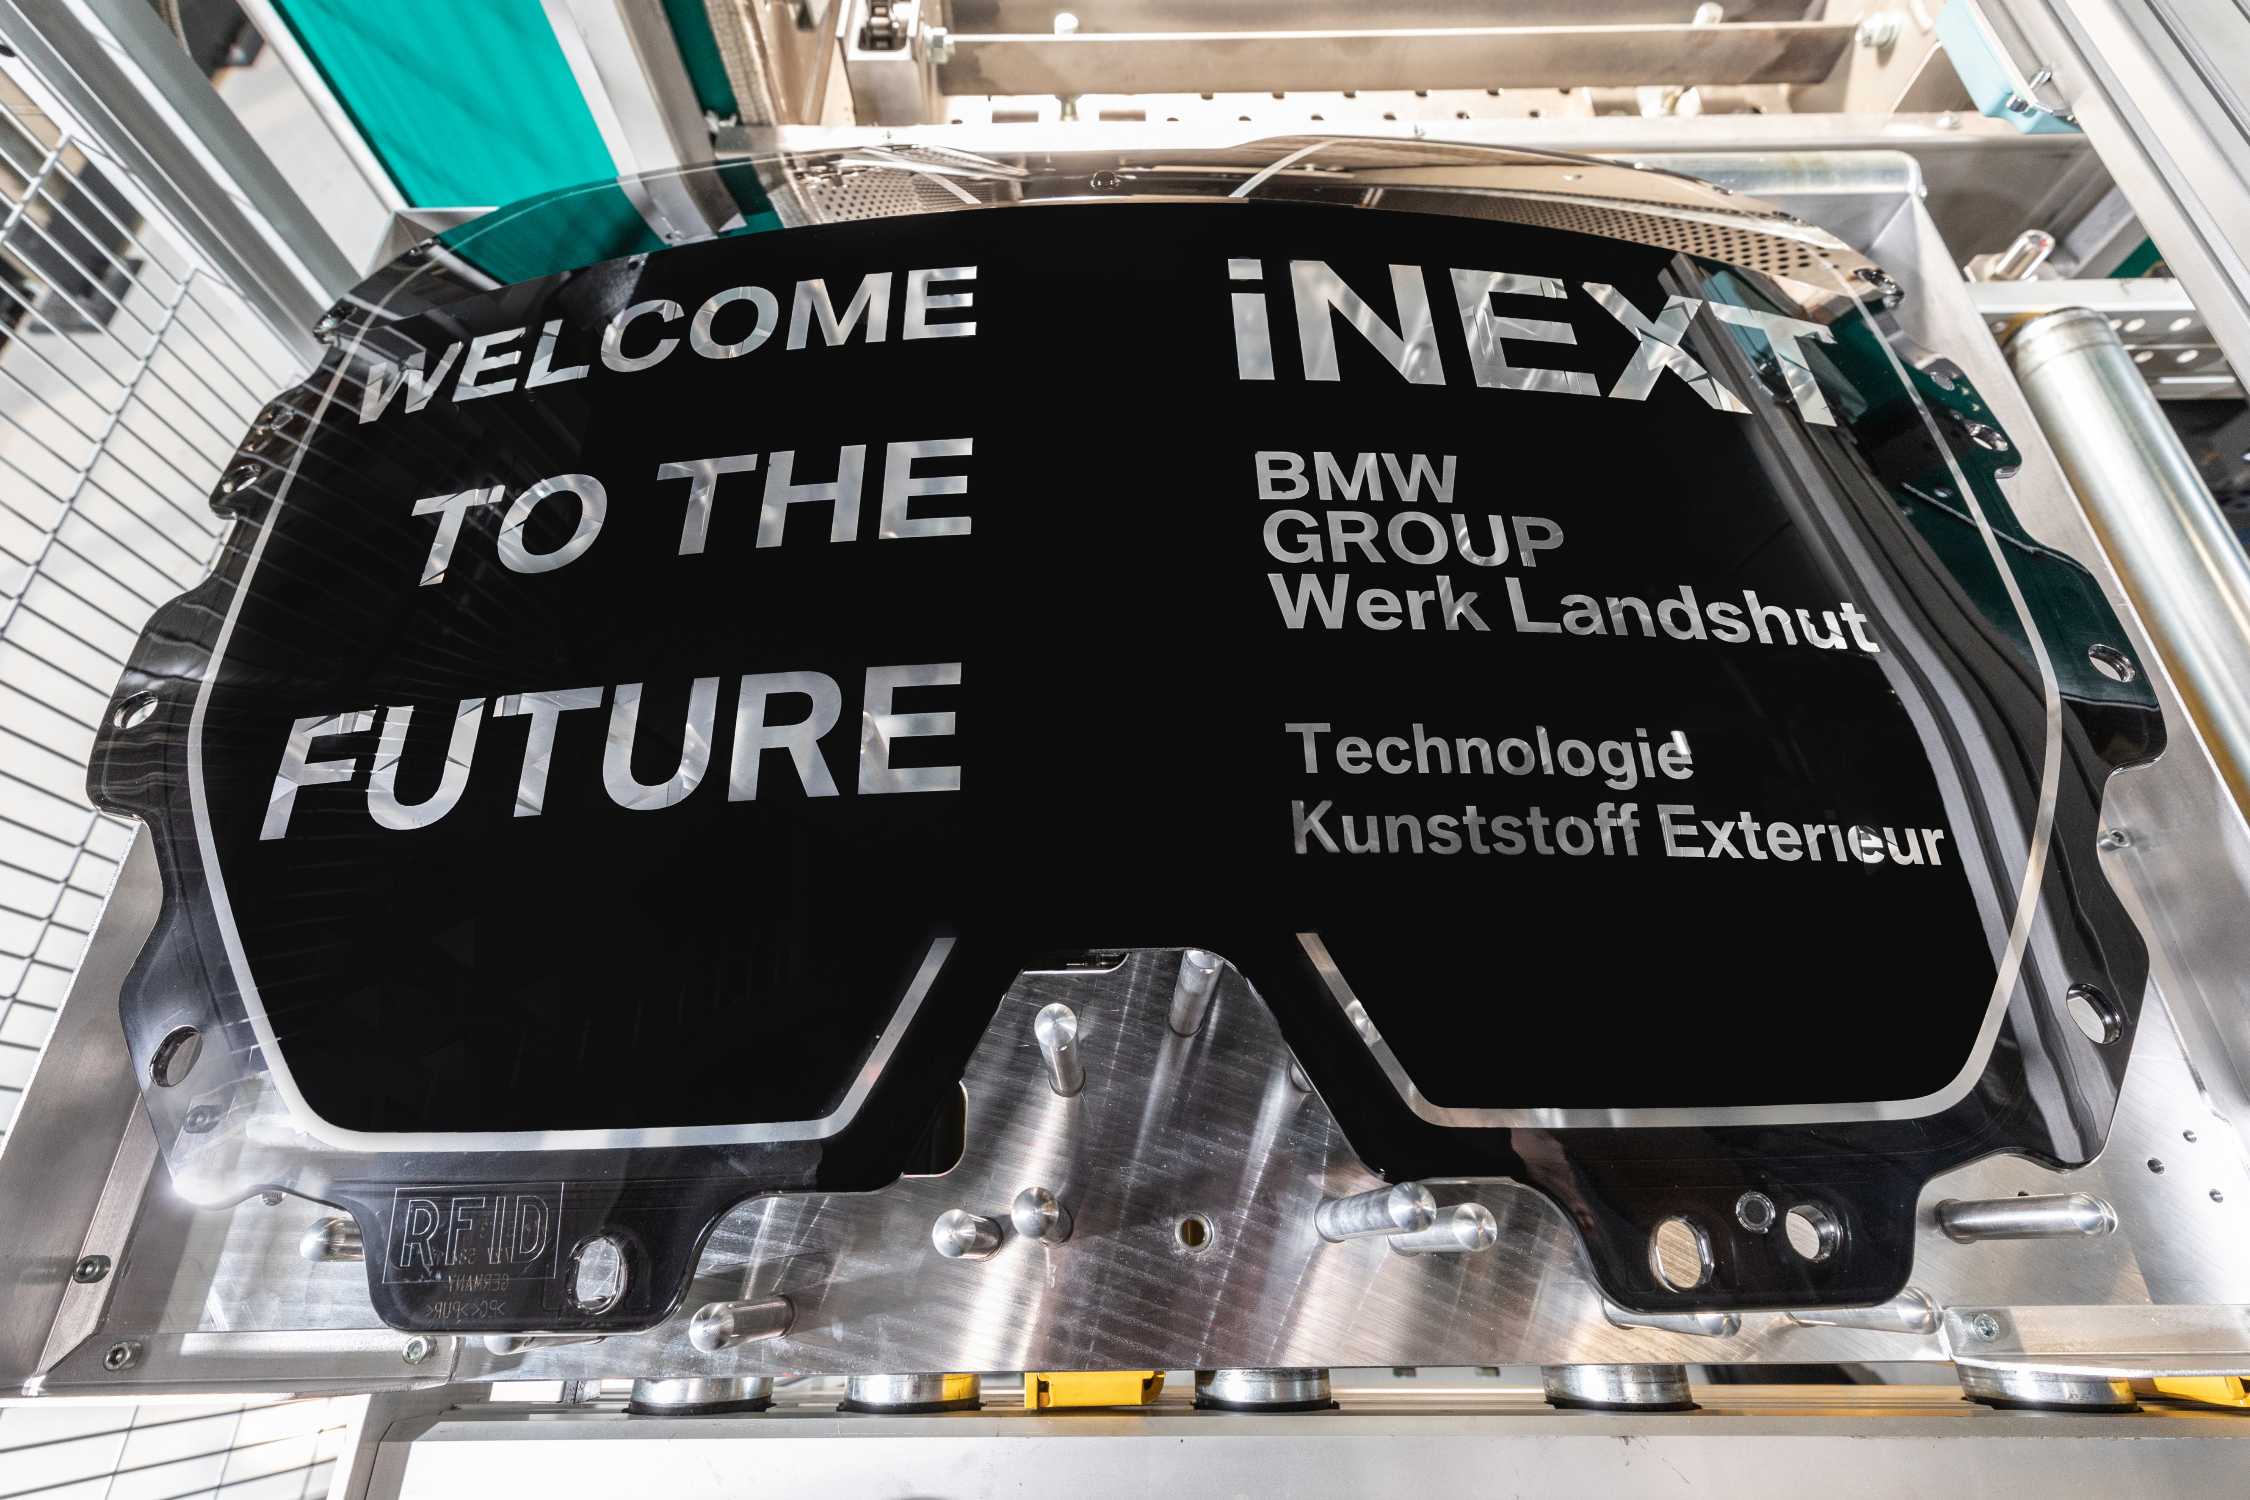 Produktionsstart von Hightech-Komponenten für den BMW iNEXT im BMW Group Werk Landshut, Niederbayern: Eröffnung einer neuen Fertigungshalle für innovative Niere als zentrales Bauteil für das hochautomatisierte Fahren (07/2020).